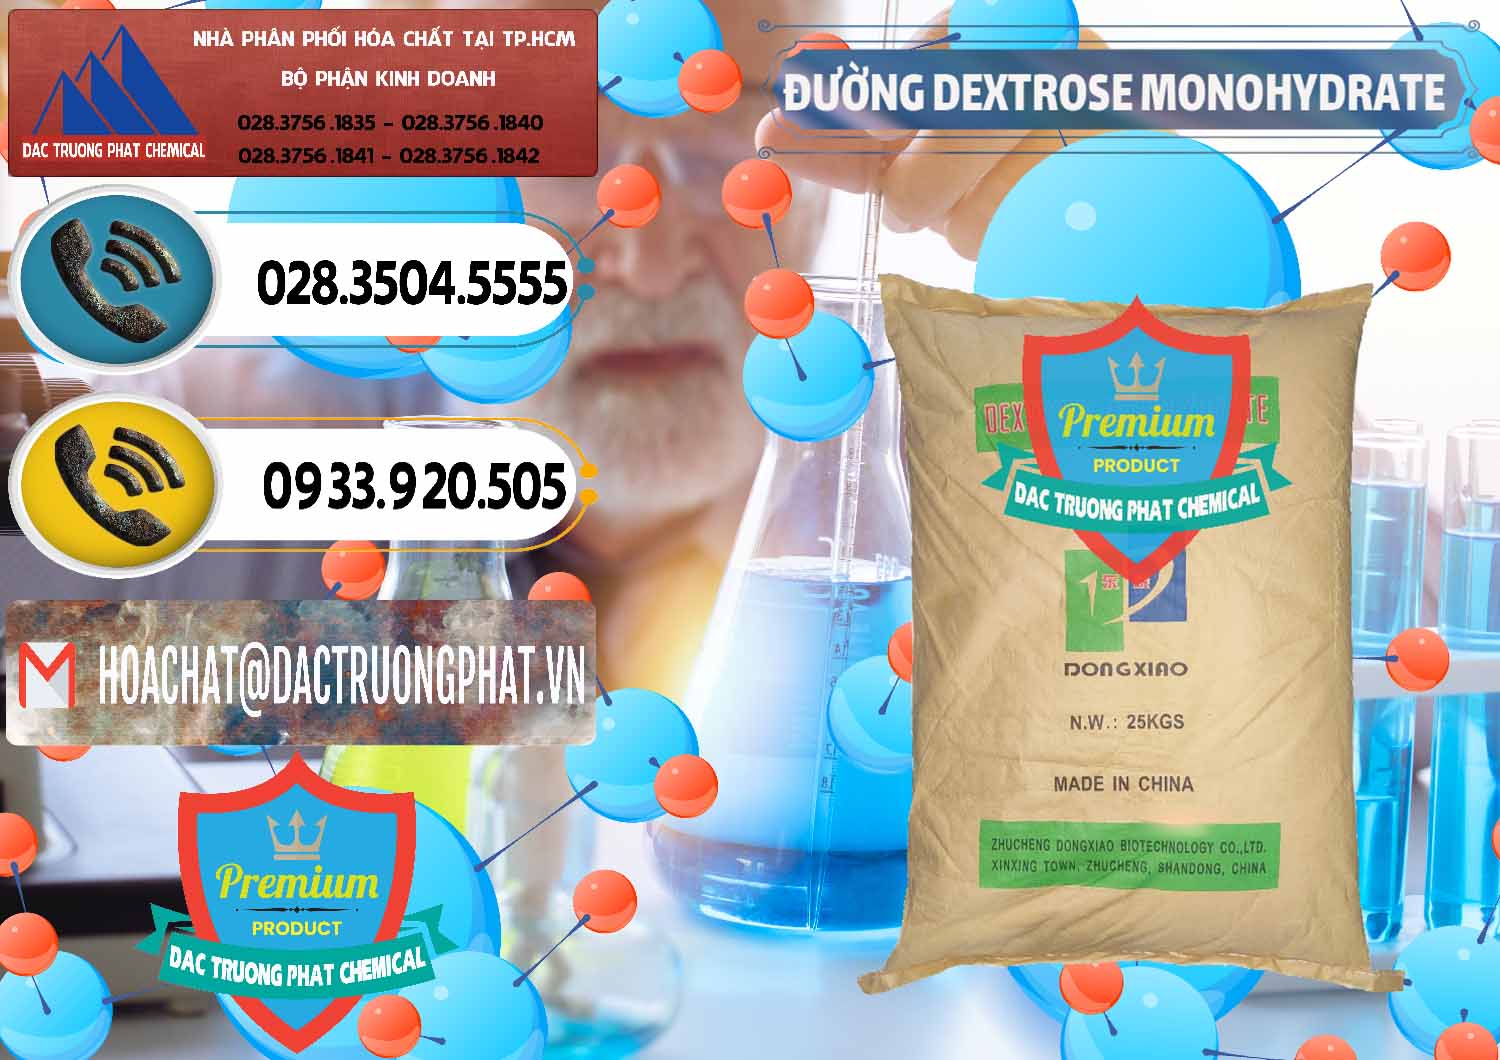 Nơi cung cấp _ bán Đường Dextrose Monohydrate Food Grade Dongxiao Trung Quốc China - 0063 - Cty chuyên kinh doanh & cung cấp hóa chất tại TP.HCM - hoachatdetnhuom.vn